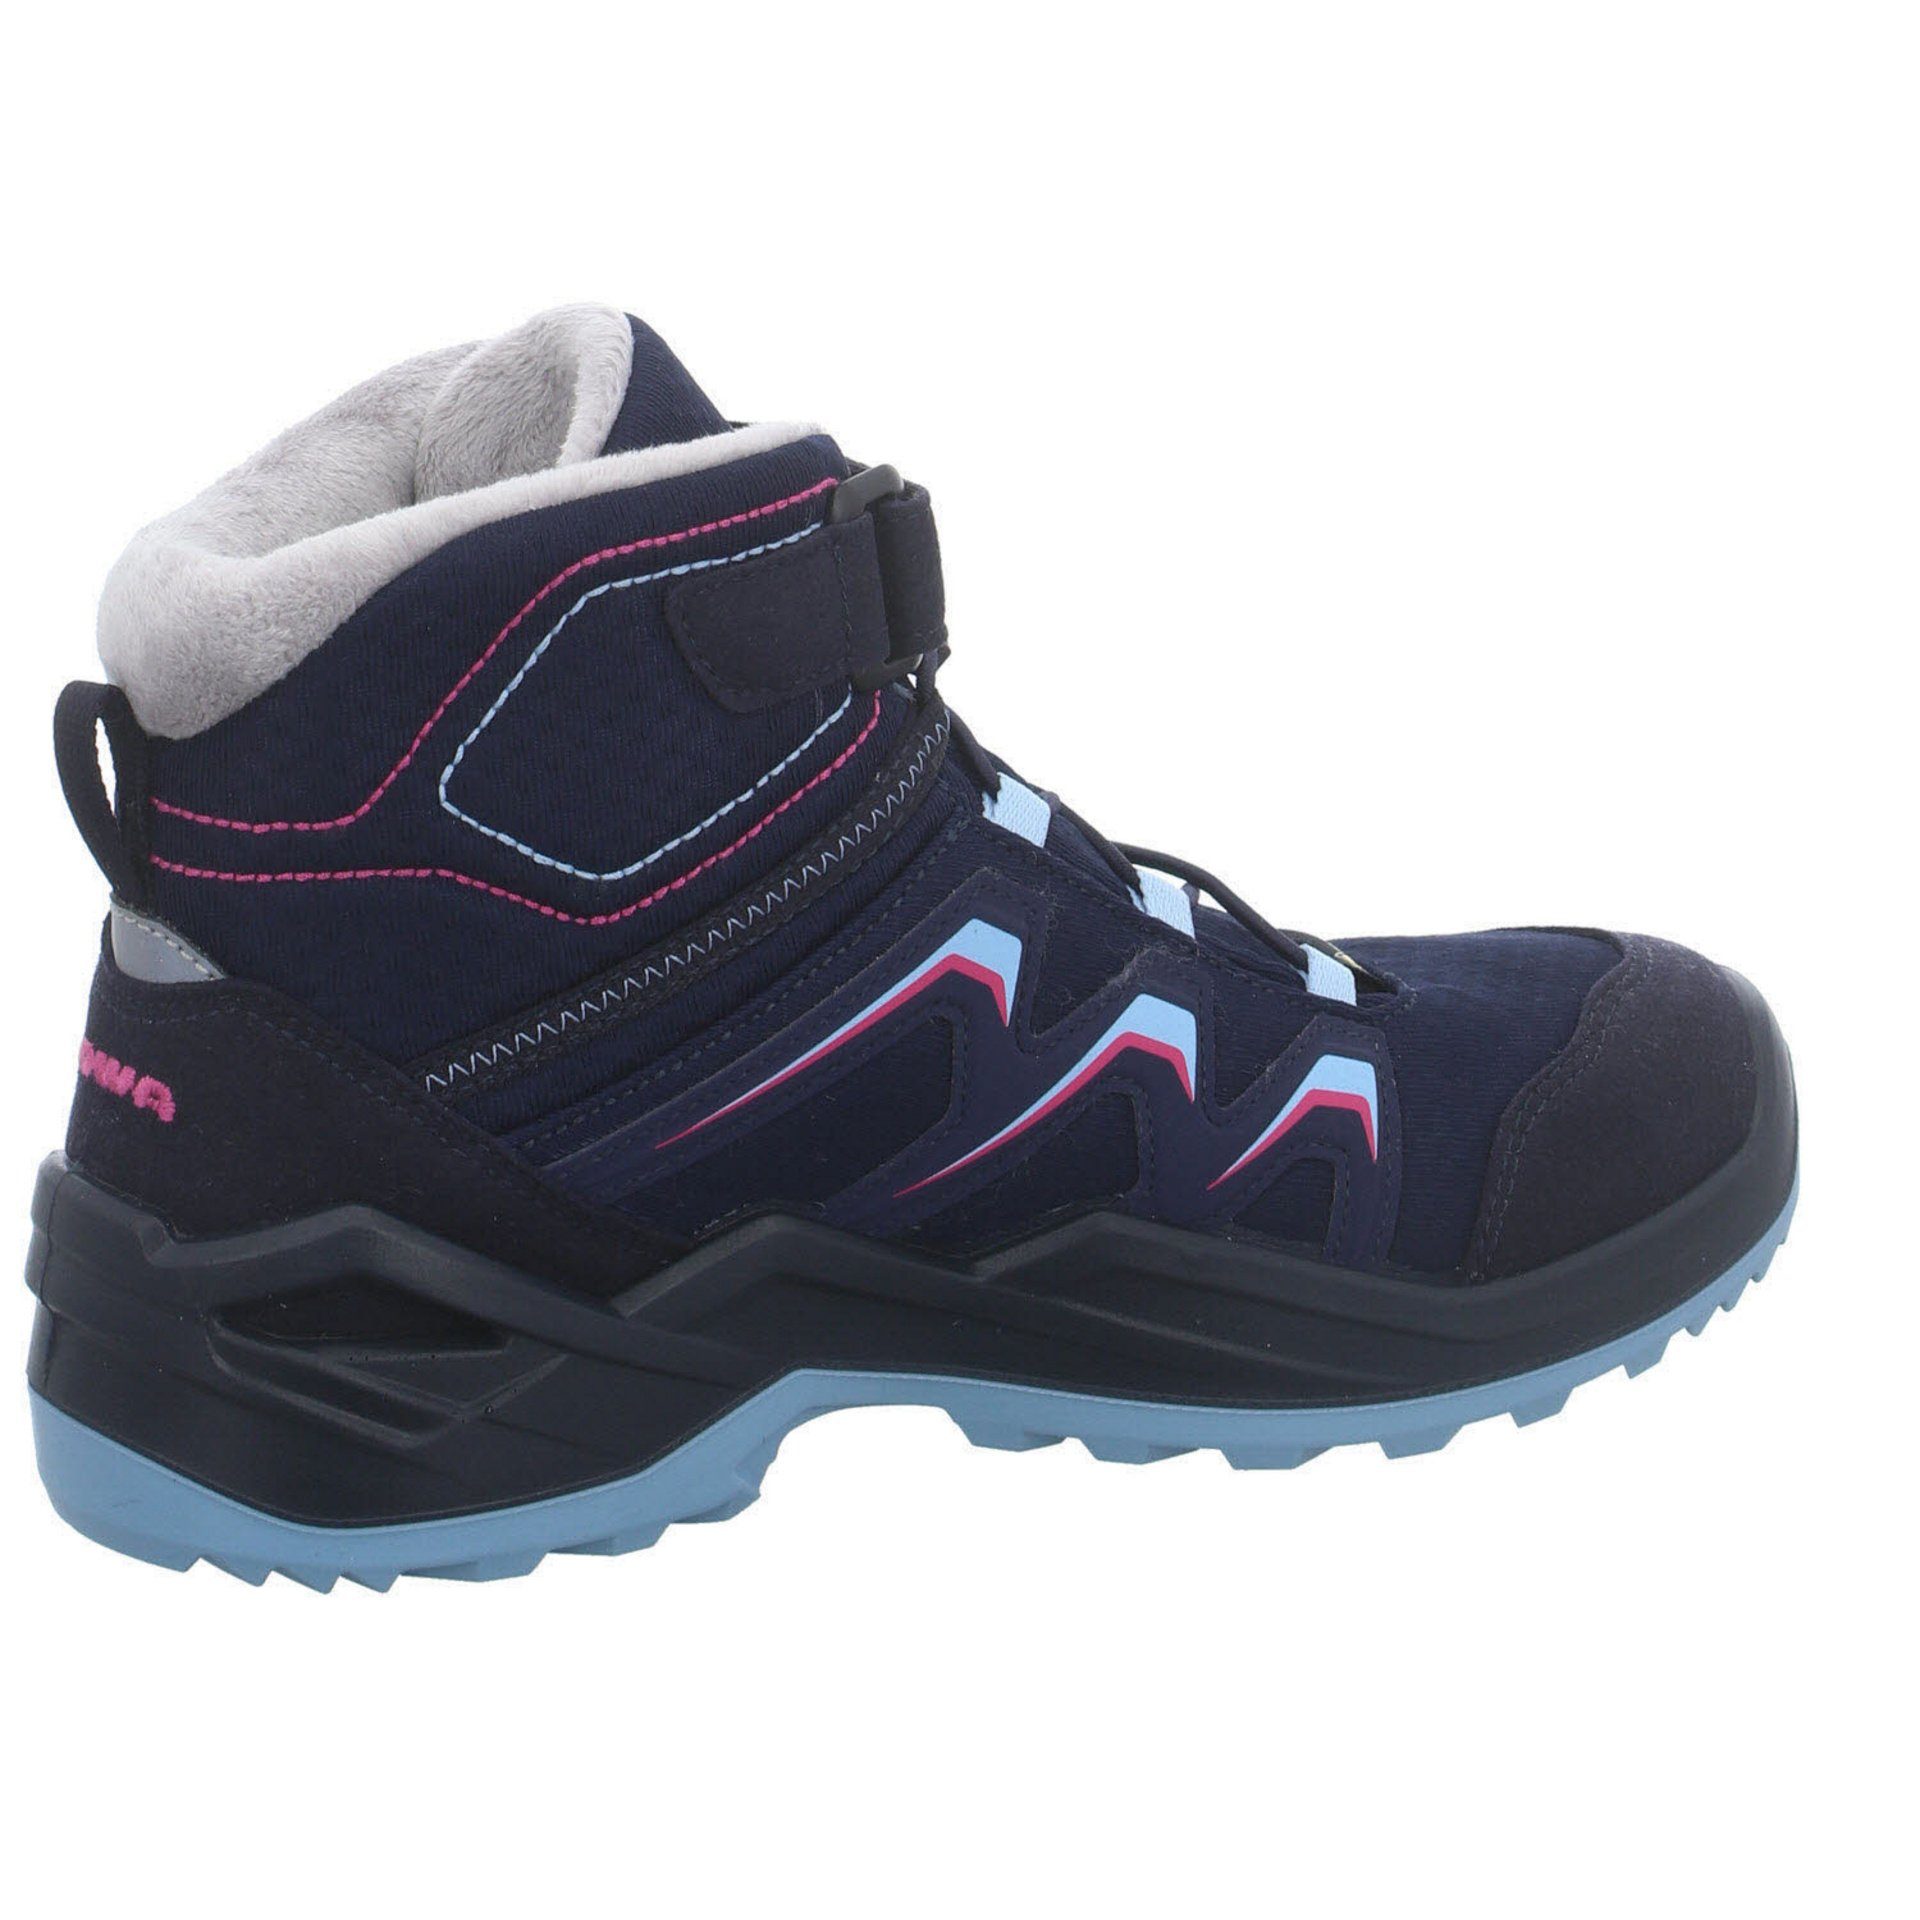 Boots GTX Lowa Stiefel Stiefel Maddox Warm Jungen Schuhe Textil NAVY/BEERE